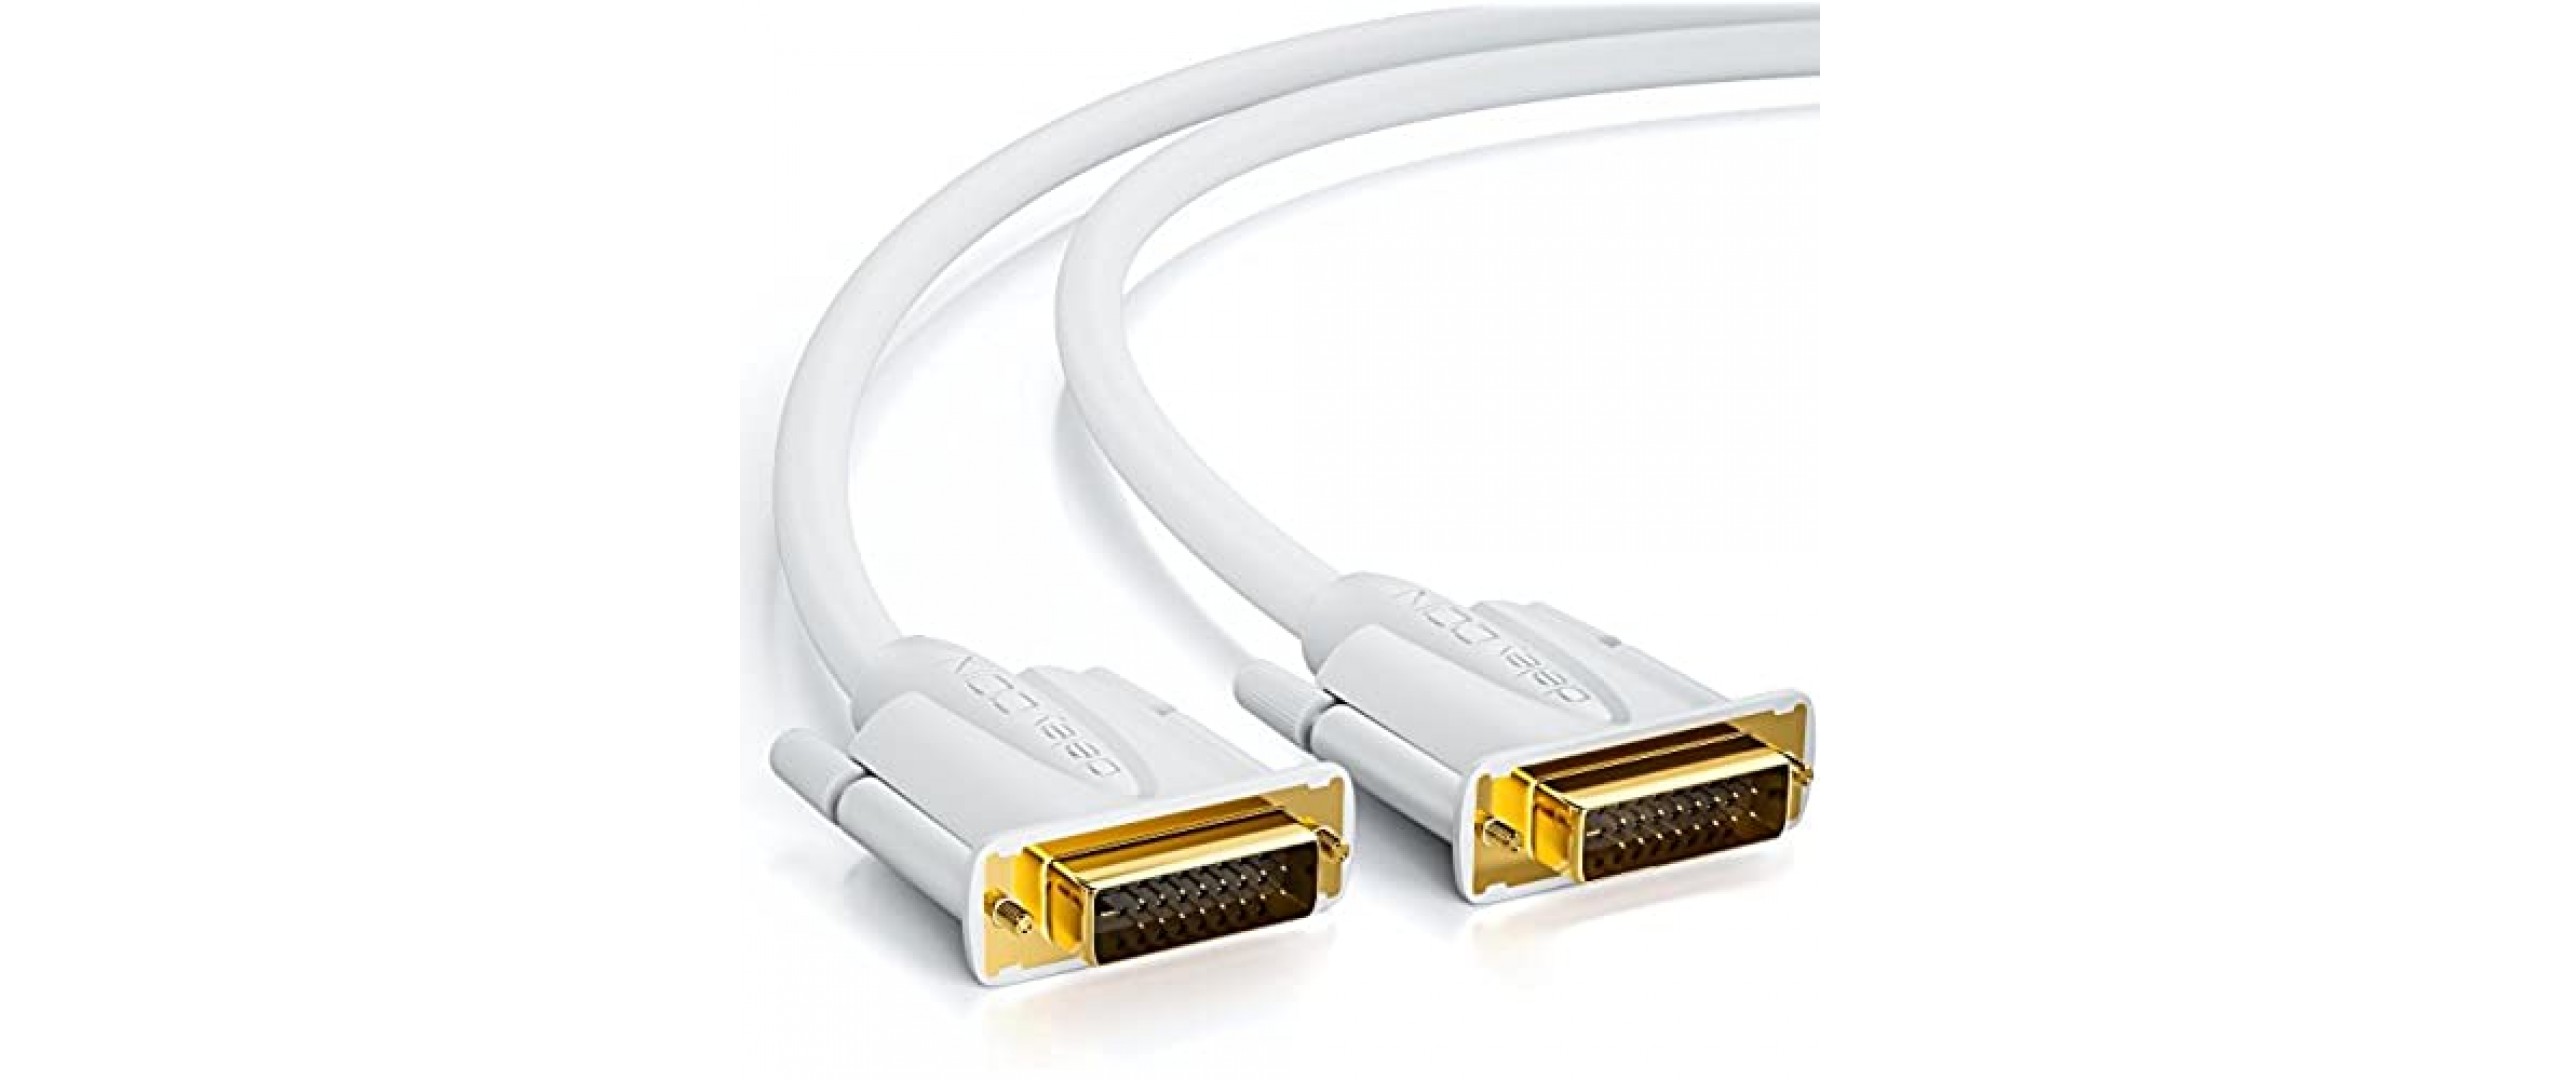 deleyCON 2m DVI Kabel Dual Link 24+1 HDTV Auflösungen bis 2560x1080 Full HD 1080p 3D Ready DVI-D Dual Link vergoldete Kontakte - Weiß